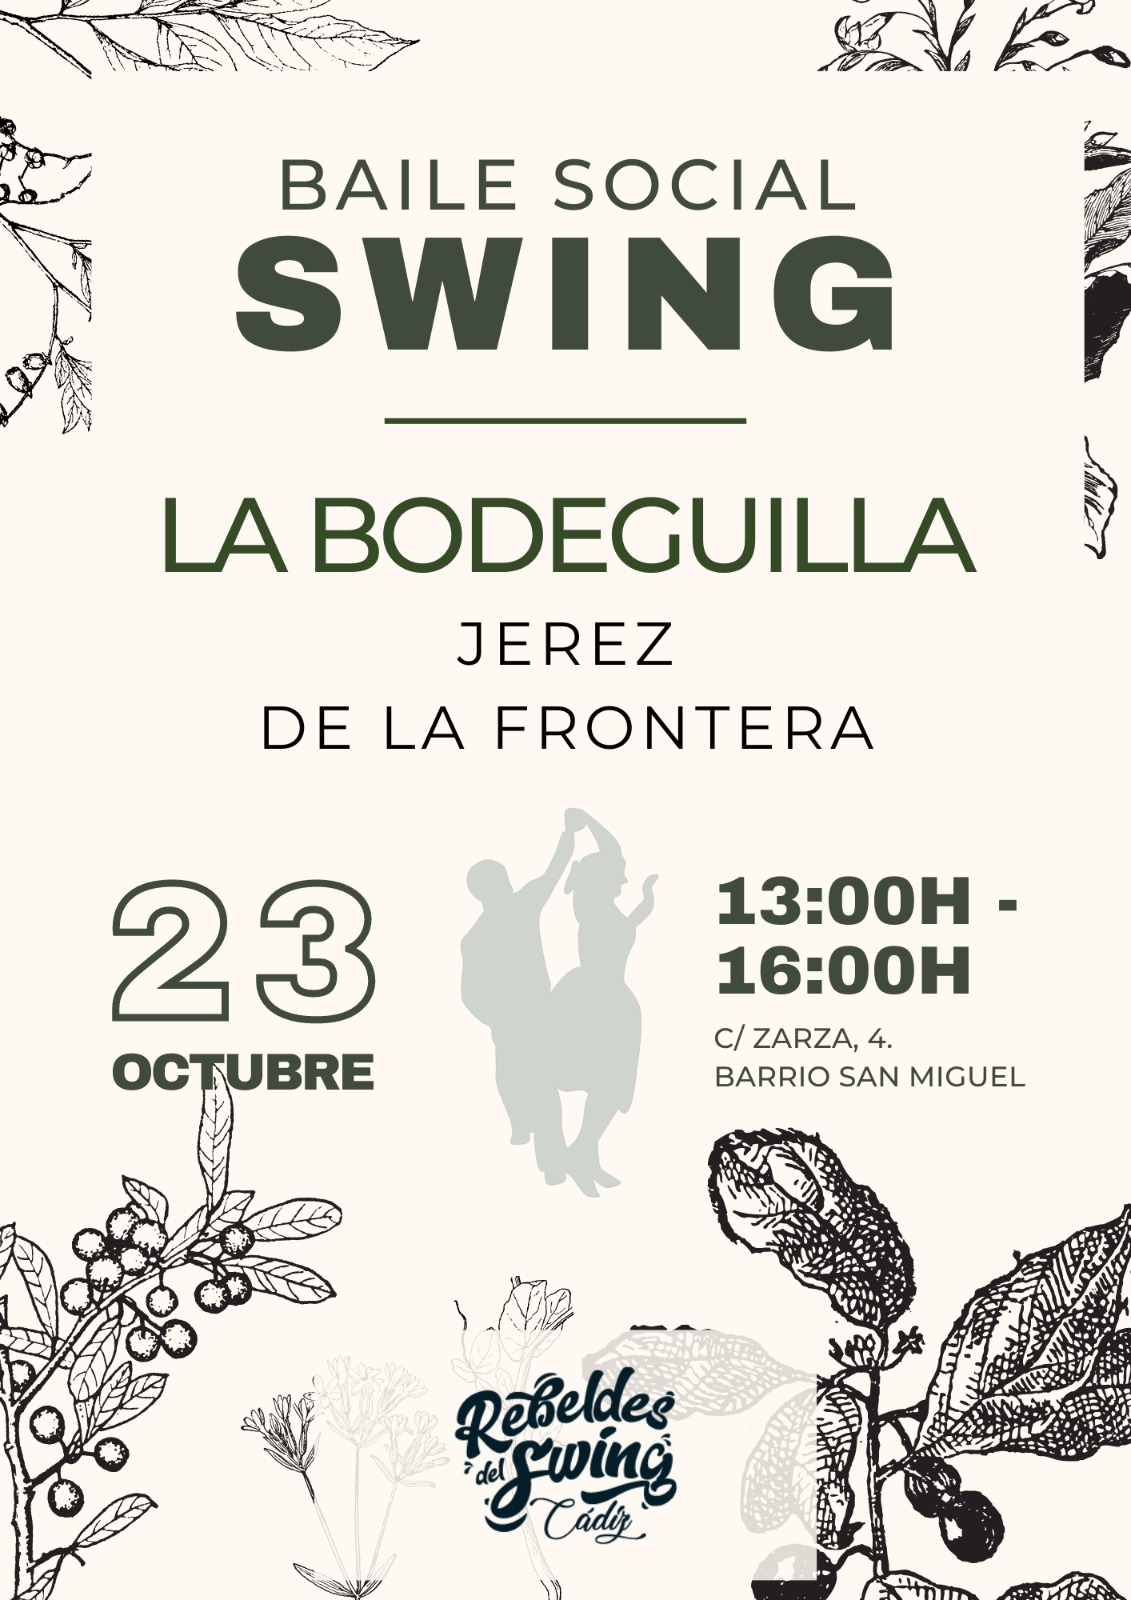 Swing en La Bodeguilla Jerez